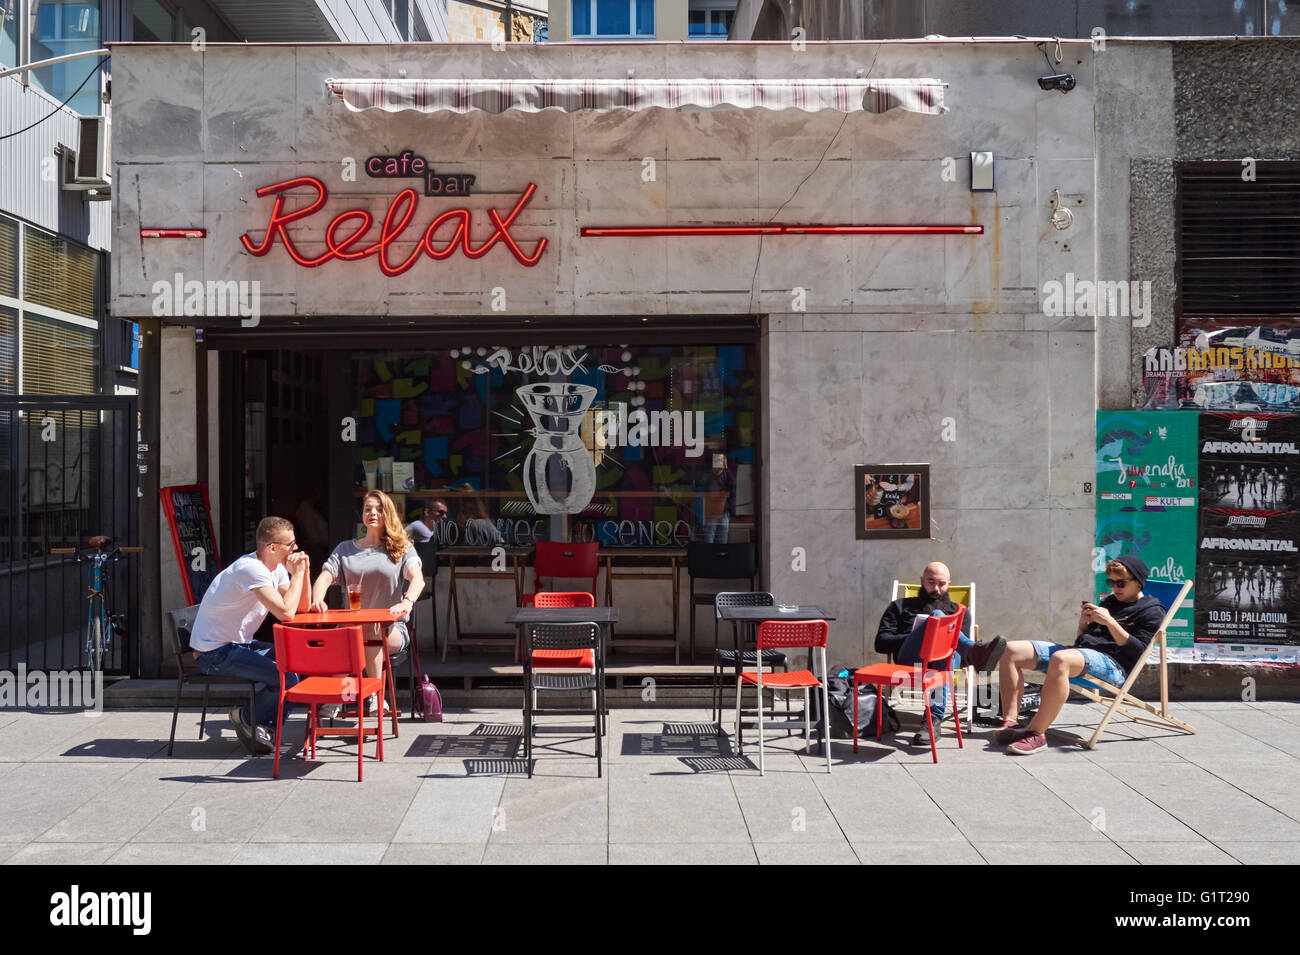 Le persone al di fuori seduta relax cafe a Varsavia, Polonia Foto Stock